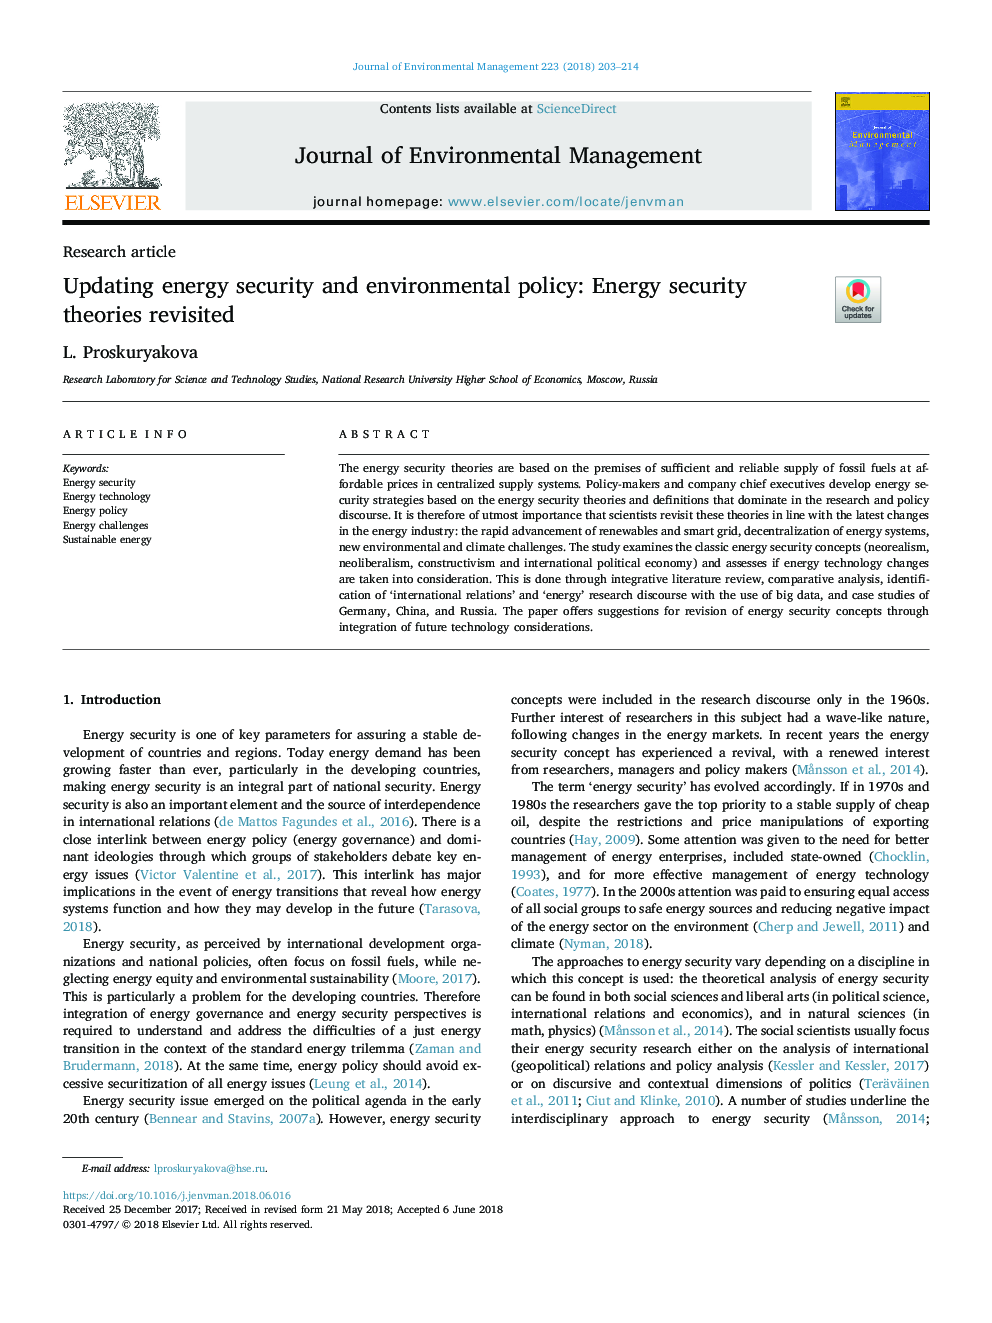 به روزرسانی امنیت انرژی و سیاست زیست محیطی: تئوری های امنیتی انرژی بازبینی شده است 